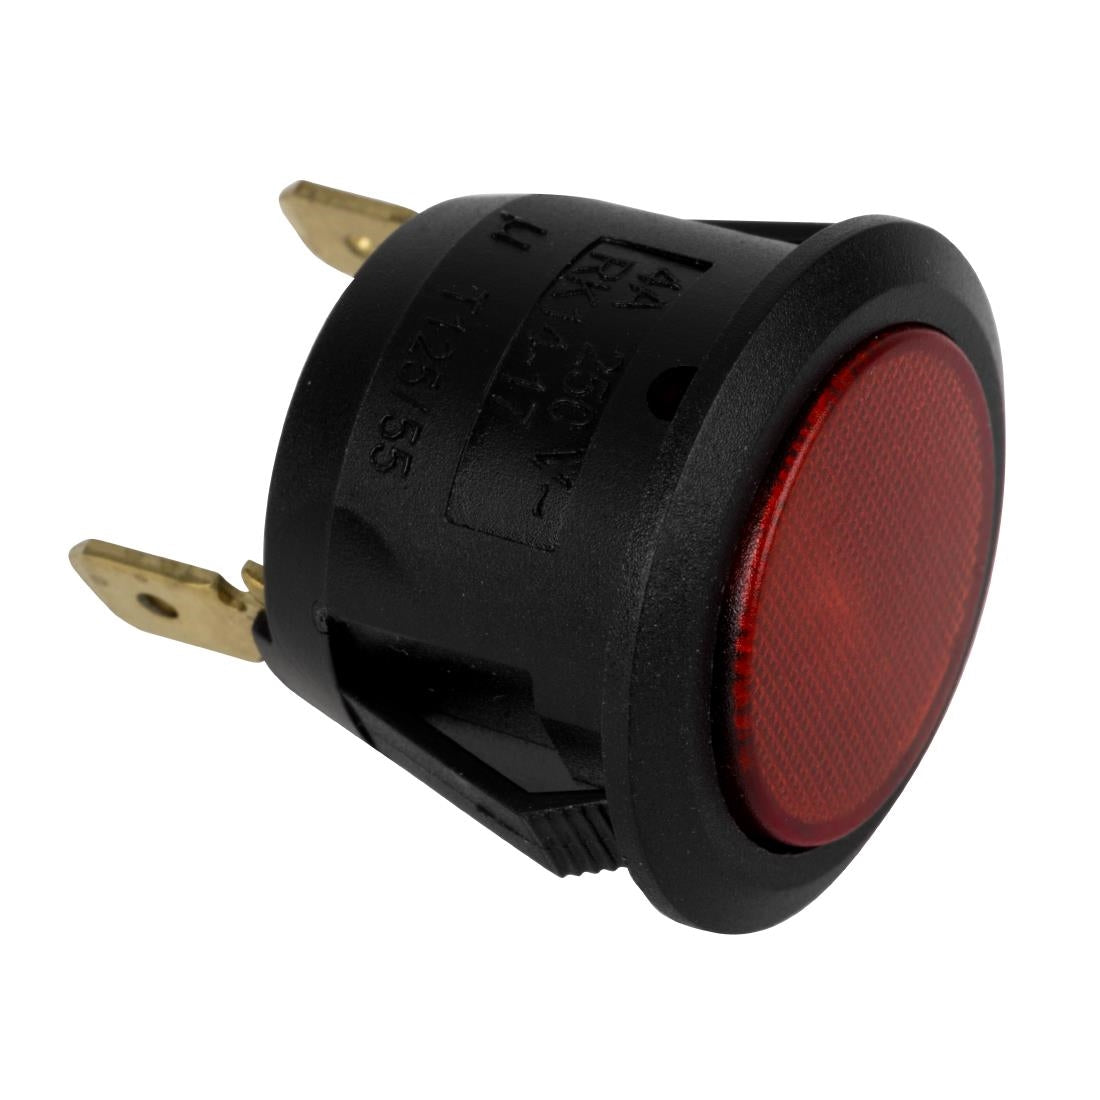 AT014 Buffalo 600 Series Red Signal Lamp